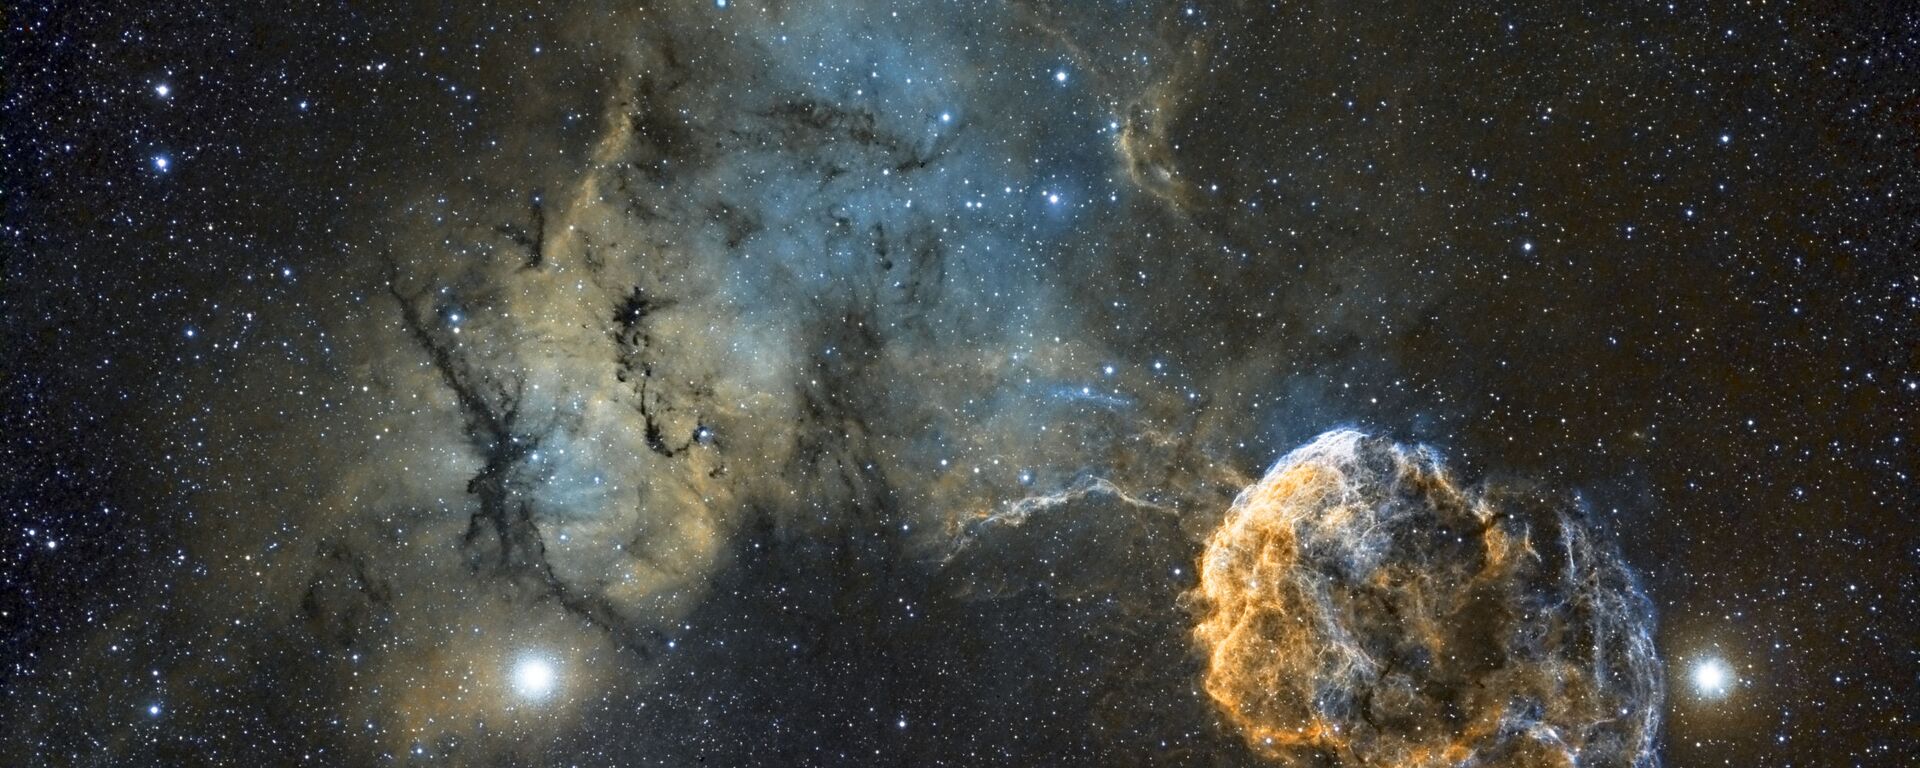 القائمة القصيرة لمسابقة التصوير الفلكي الدولية أستروفوتوغروفي لعام 2017 (Insight Astronomy Photographer of the Year) - صورة بعنوان سديم قنديل البحر (Sh2-249 Jellyfish Nebula)  للمصور كريس هيبي - سبوتنيك عربي, 1920, 04.07.2018